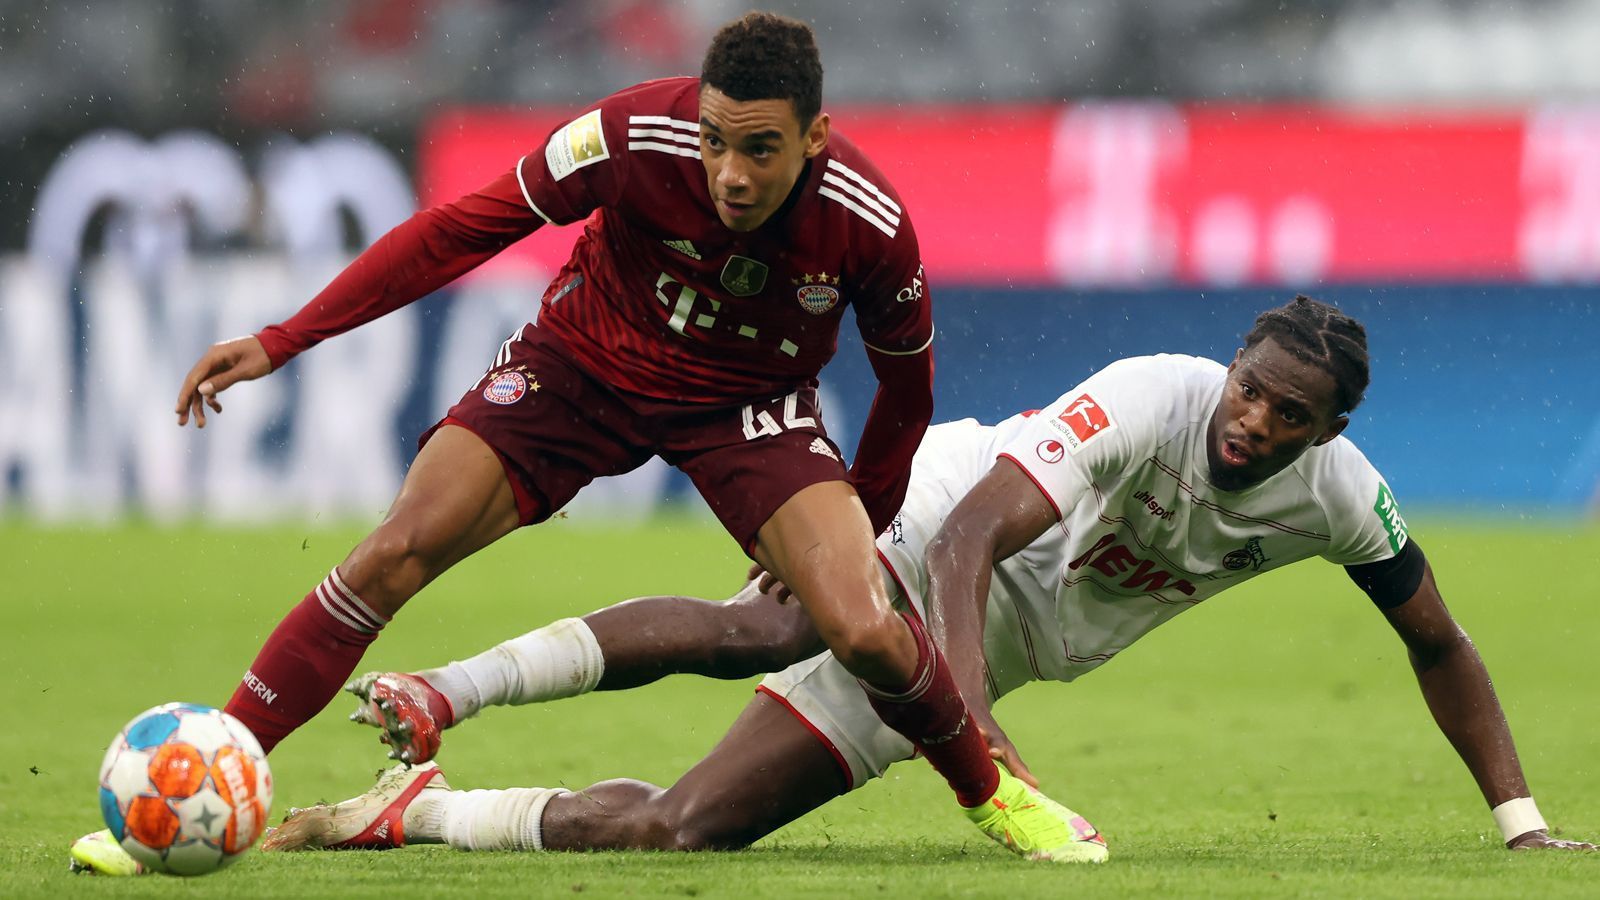 
                <strong>Jamal Musiala (FC Bayern München)</strong><br>
                Position: Offensiver Mittelfeldspieler - Alter: 18 Jahre - Vertrag bis: 2026
              